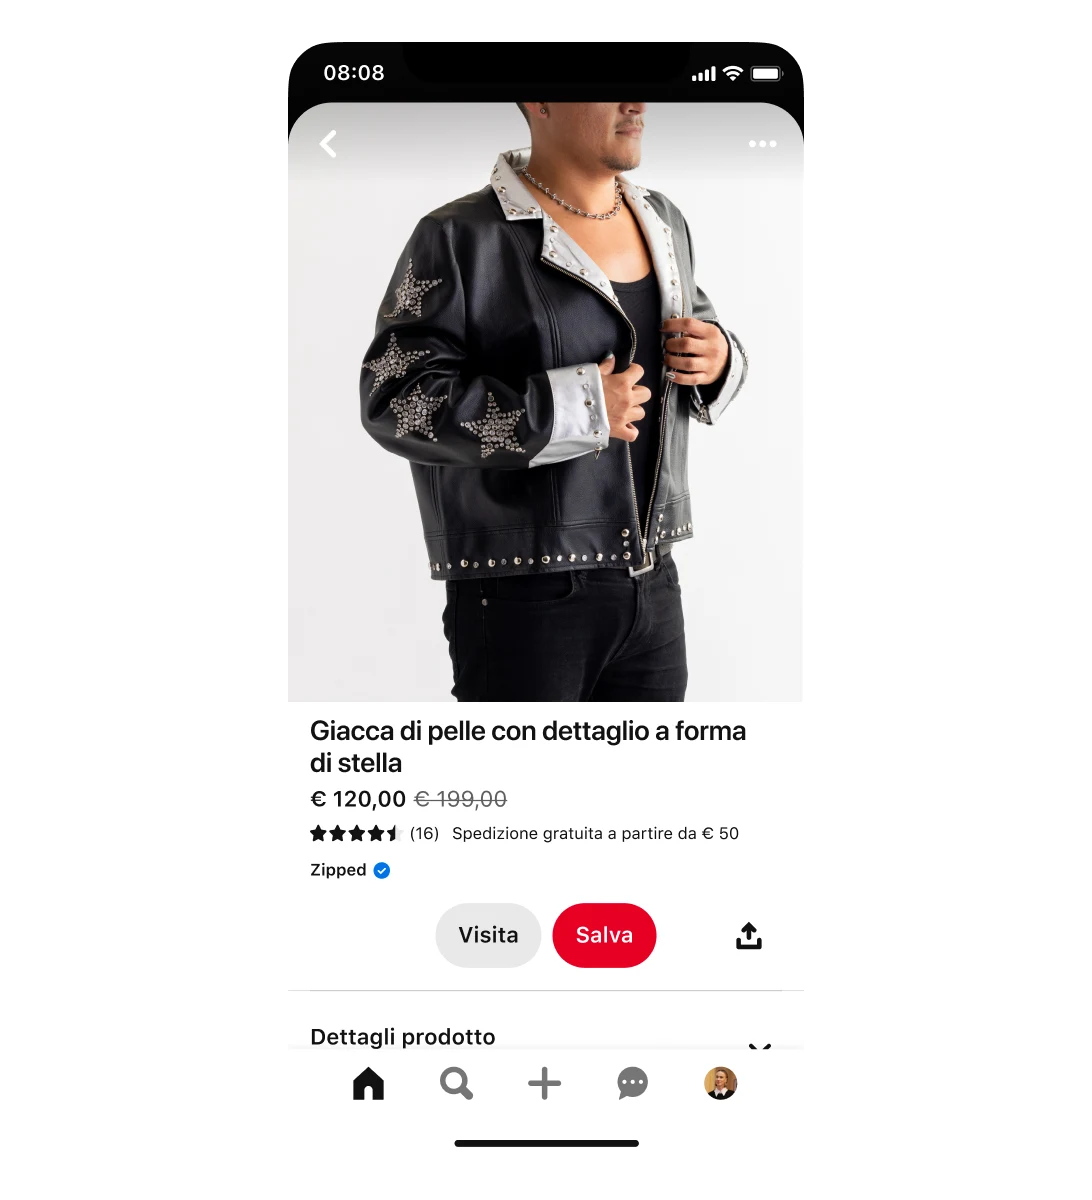 Visualizzazione su dispositivo mobile di uno Shopping Ad relativo a una giacca in ecopelle con dettagli a forma di stella. La giacca è scontata da 199 $ a 120 $. L'annuncio mostra un uomo che indossa la giacca.